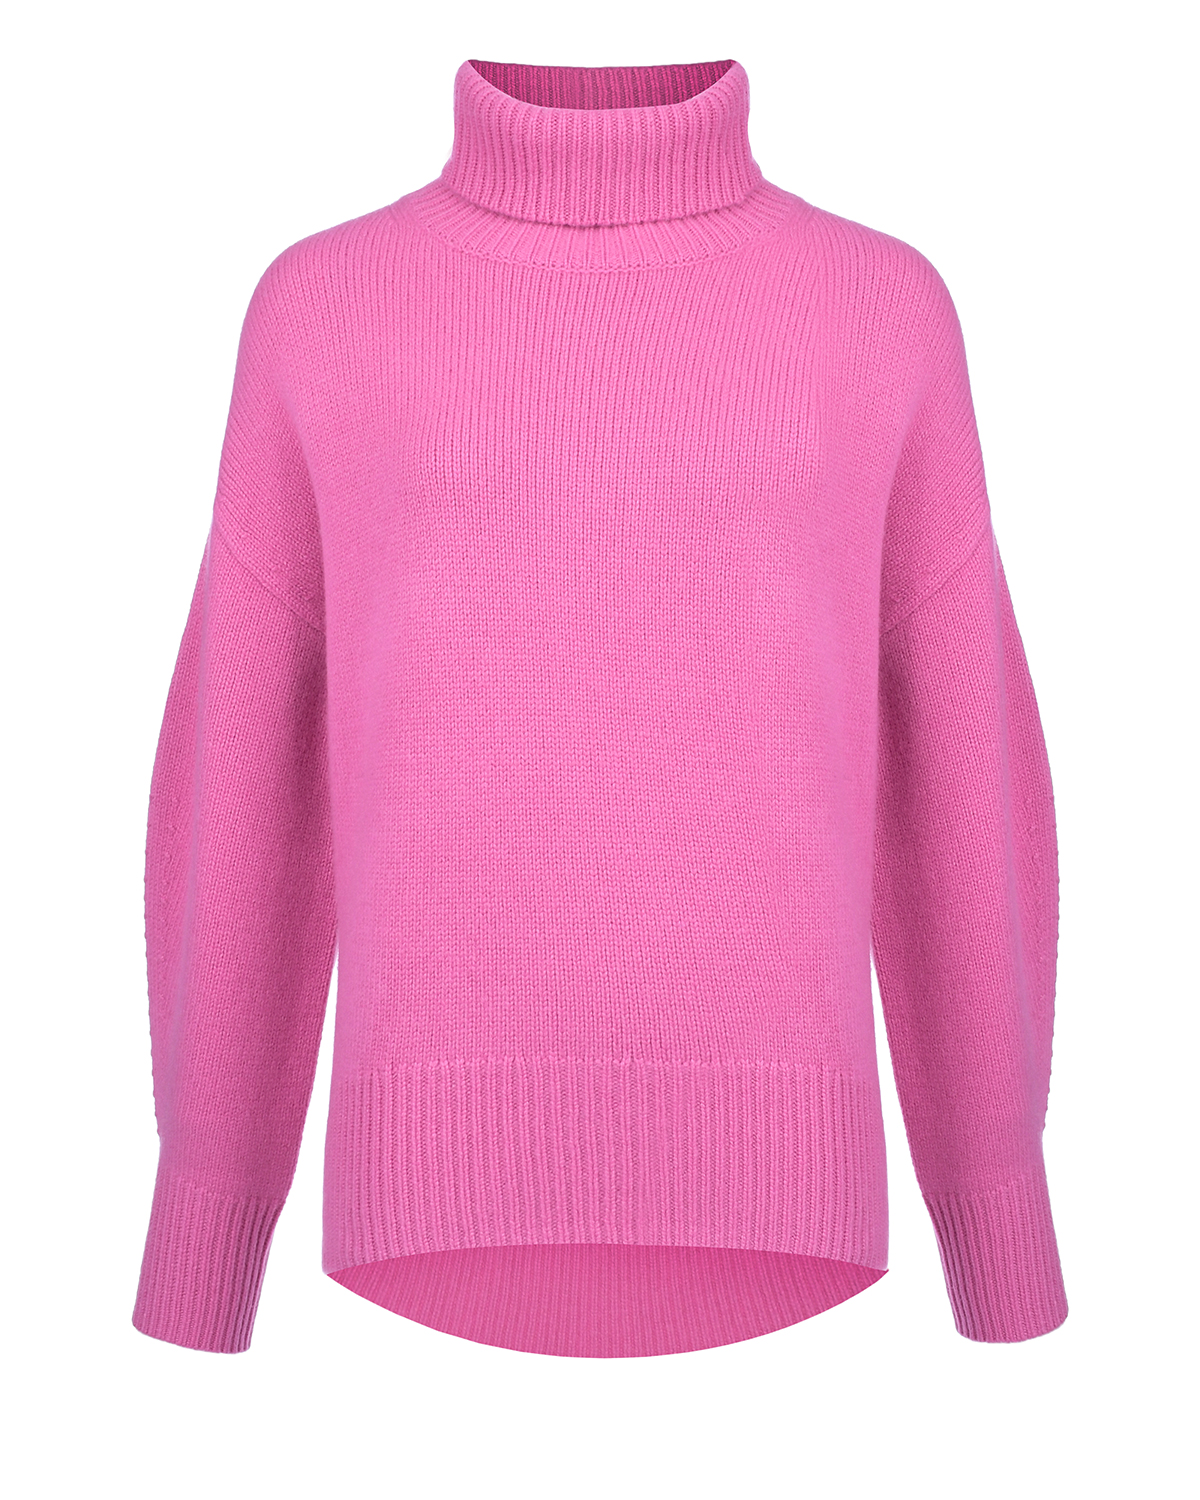 Розовый свитер из кашемира Arch4, размер 38 - фото 1